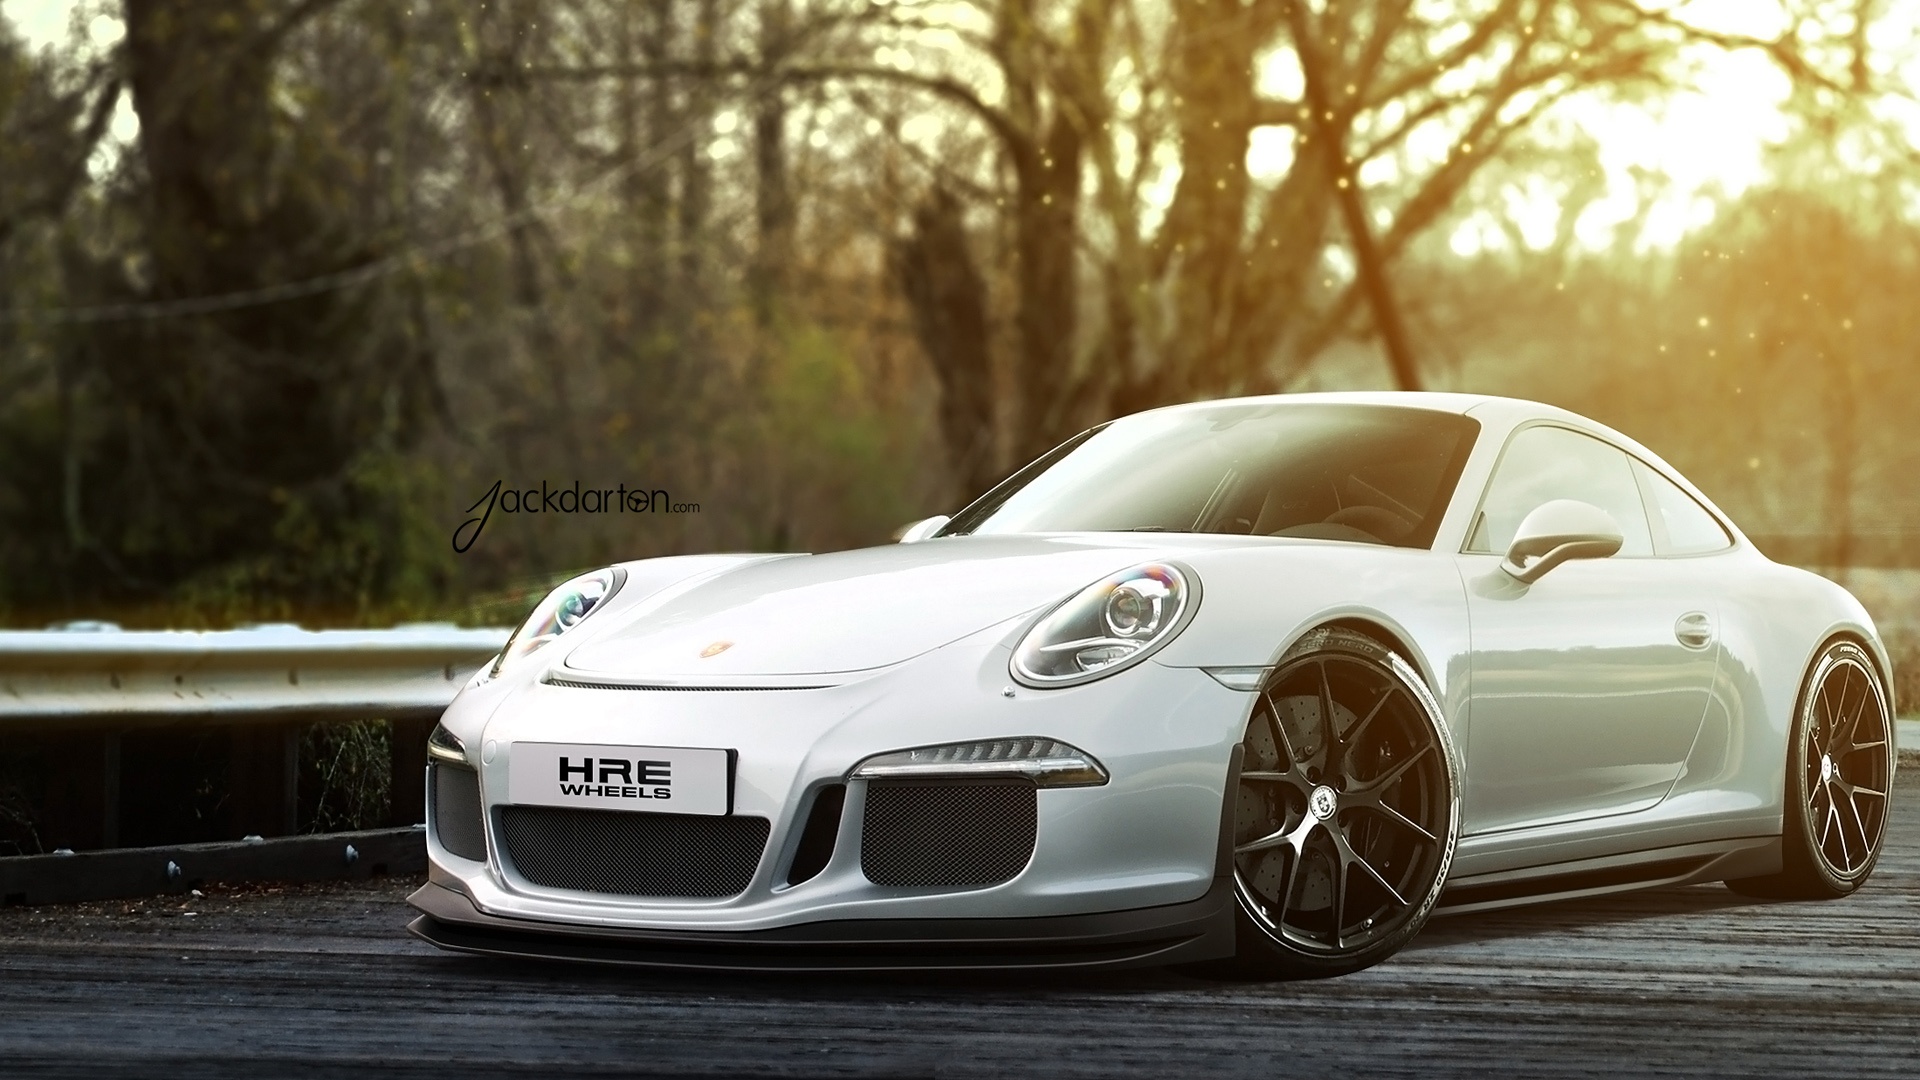 Porsche 911 Gt3 Silver , HD Wallpaper & Backgrounds